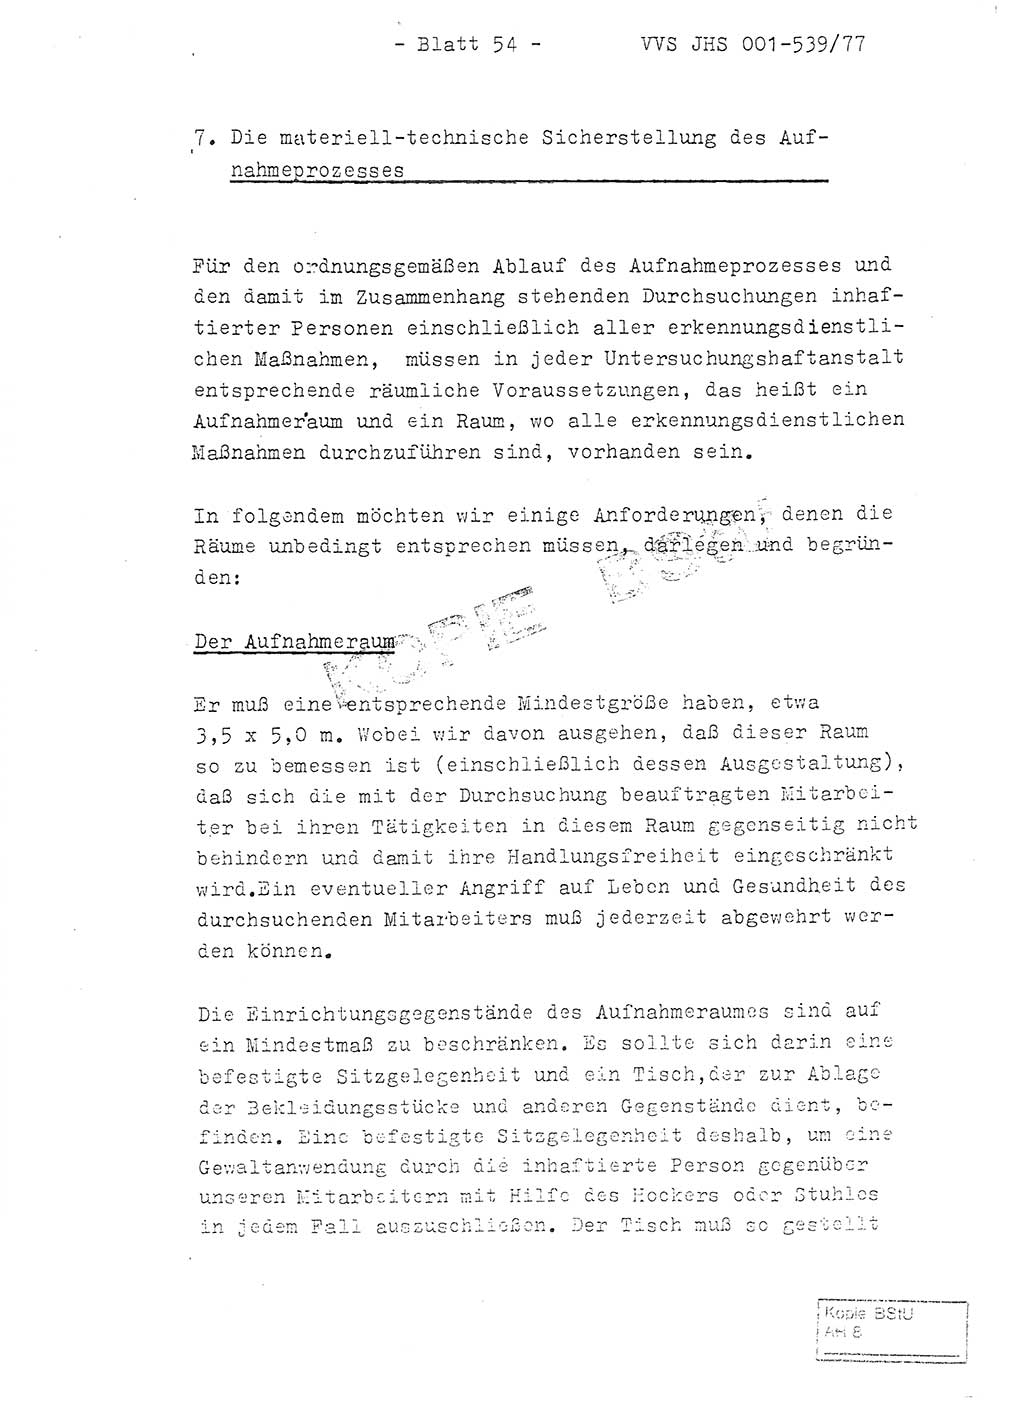 Fachschulabschlußarbeit Hauptmann Dietrich Jung (Abt. ⅩⅣ), Leutnant Klaus Klötzner (Abt. ⅩⅣ), Ministerium für Staatssicherheit (MfS) [Deutsche Demokratische Republik (DDR)], Juristische Hochschule (JHS), Vertrauliche Verschlußsache (VVS) 001-539/77, Potsdam 1978, Seite 54 (FS-Abschl.-Arb. MfS DDR JHS VVS 001-539/77 1978, S. 54)